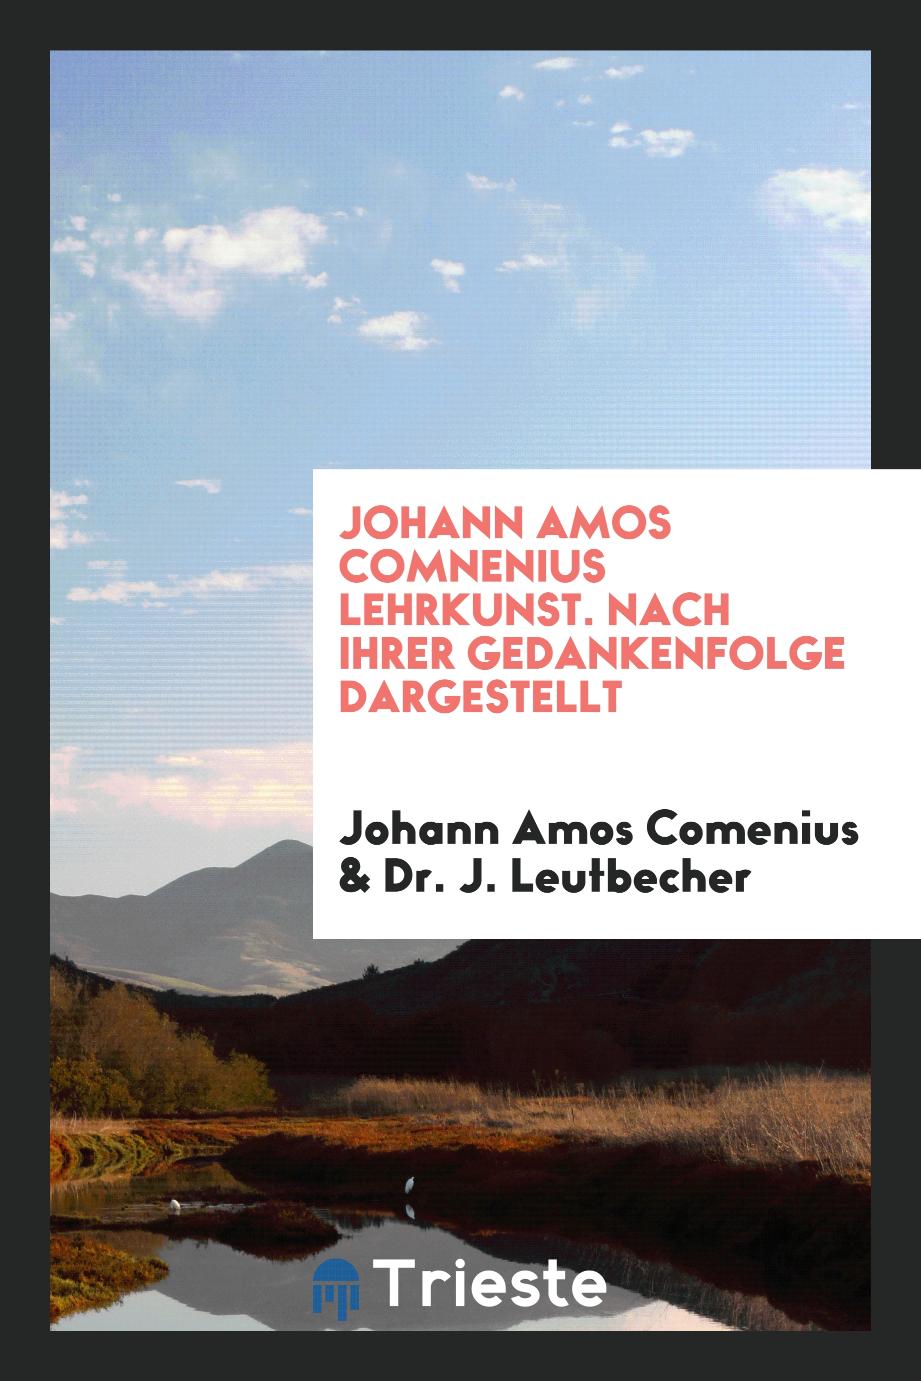 Johann Amos Comnenius Lehrkunst. Nach ihrer Gedankenfolge Dargestellt